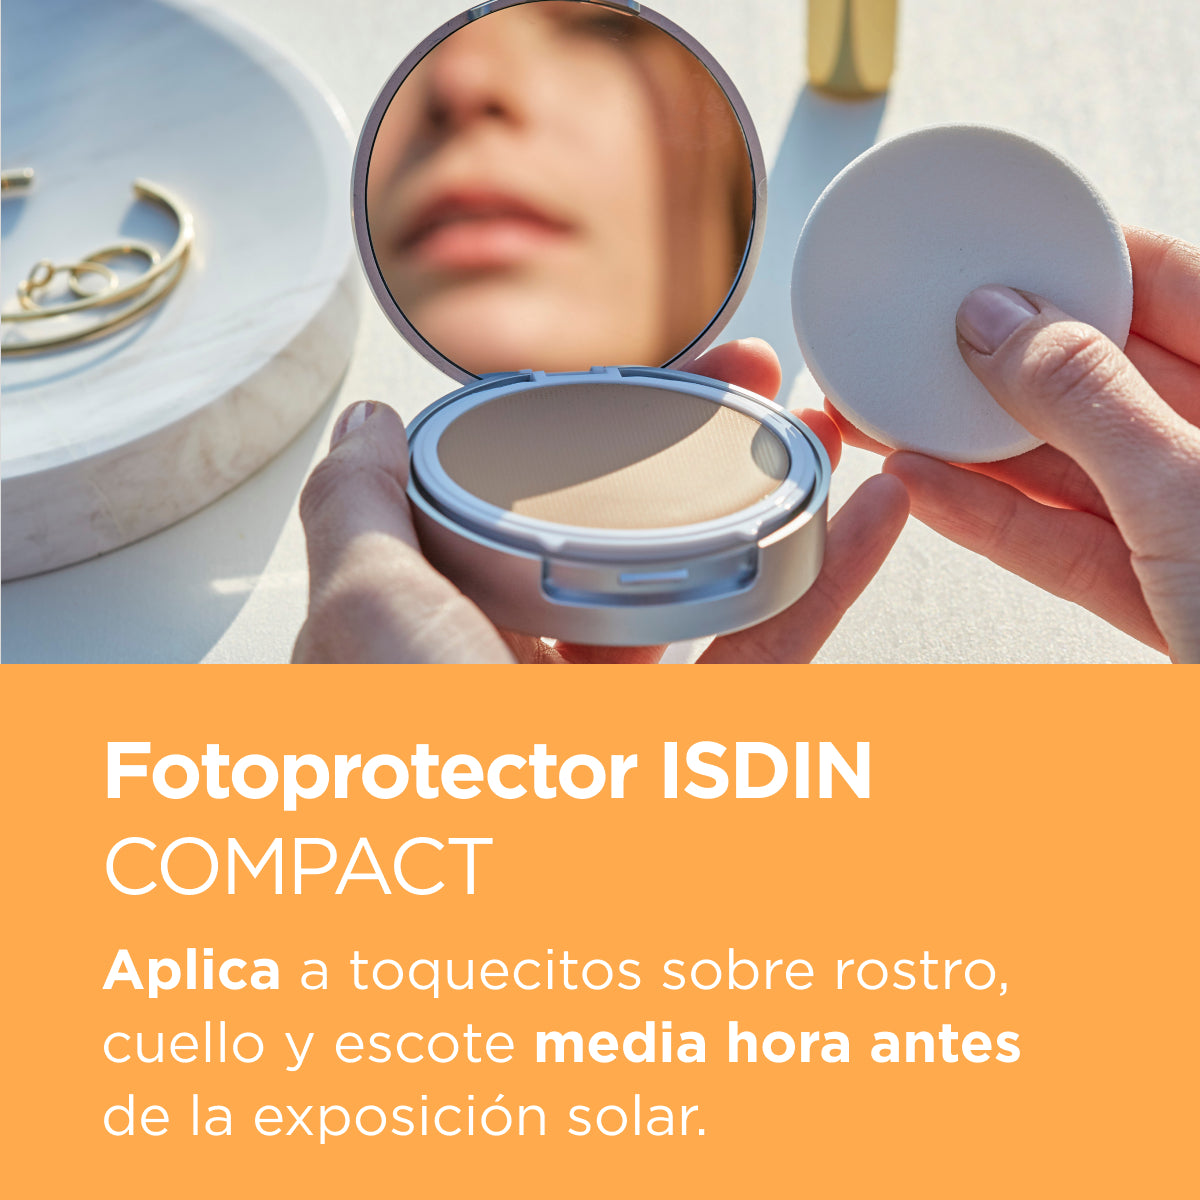 Fotoprotector Compact SPF 50 + - Maquillaje compacto con muy alta protección en dos colores